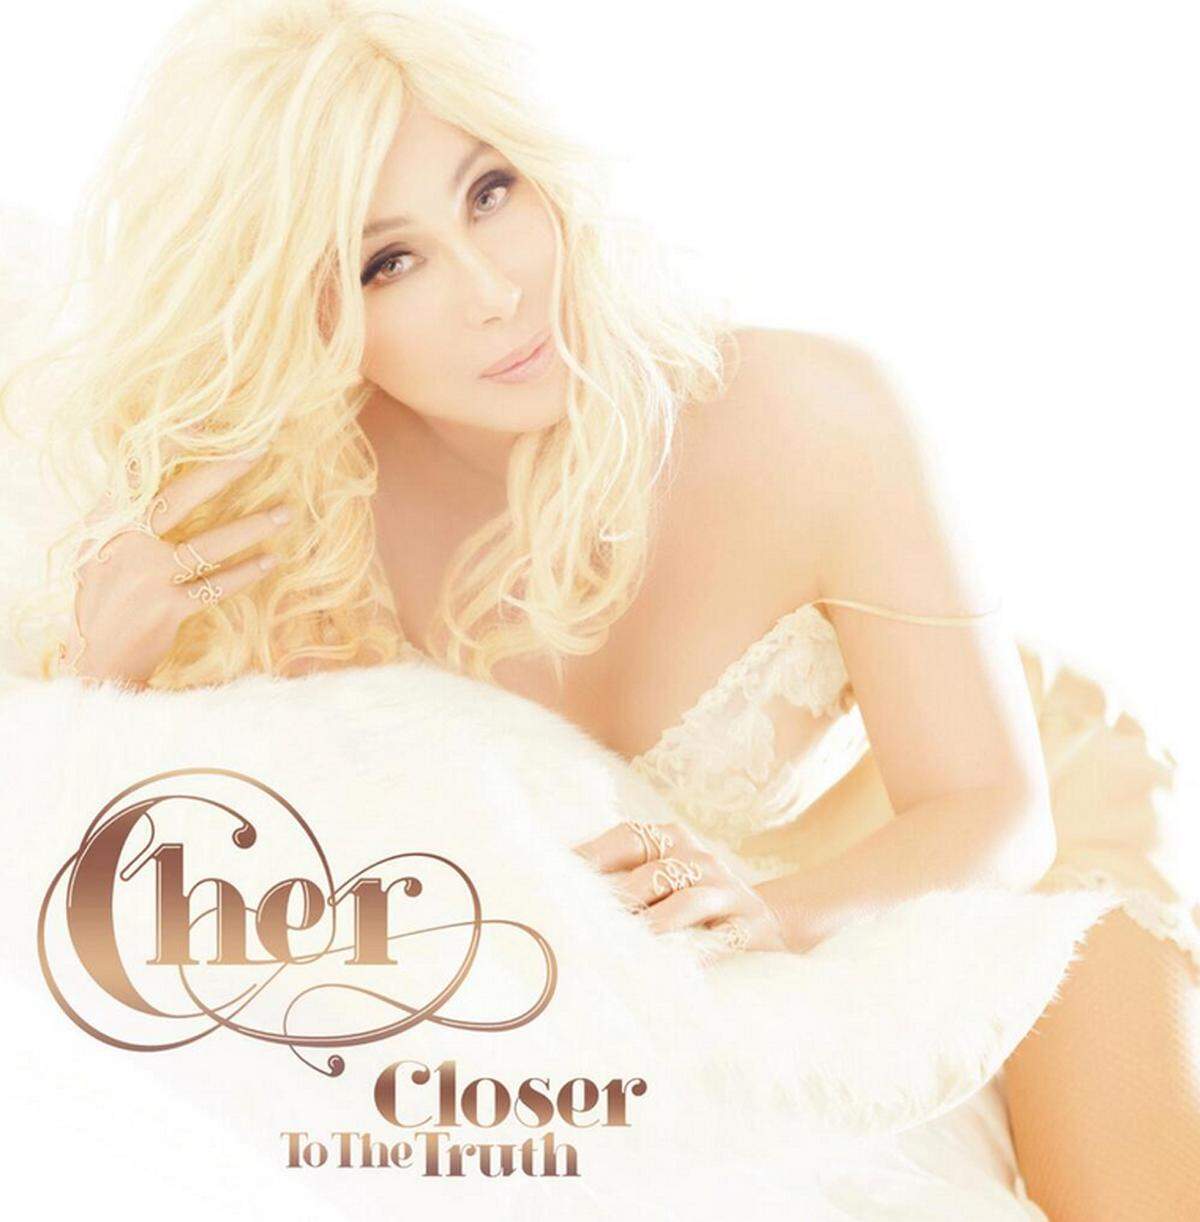 Ewige Schönheit scheint die 67-jährige Sängerin Cher nicht nur durch diverse Schönheitsoperationen zu erlangen, sondern auch durch den exzessiven Einsatz von Photoshop. Das zumindest meinen Kritiker beim Blick auf das neue CD-Cover der Sängerin.